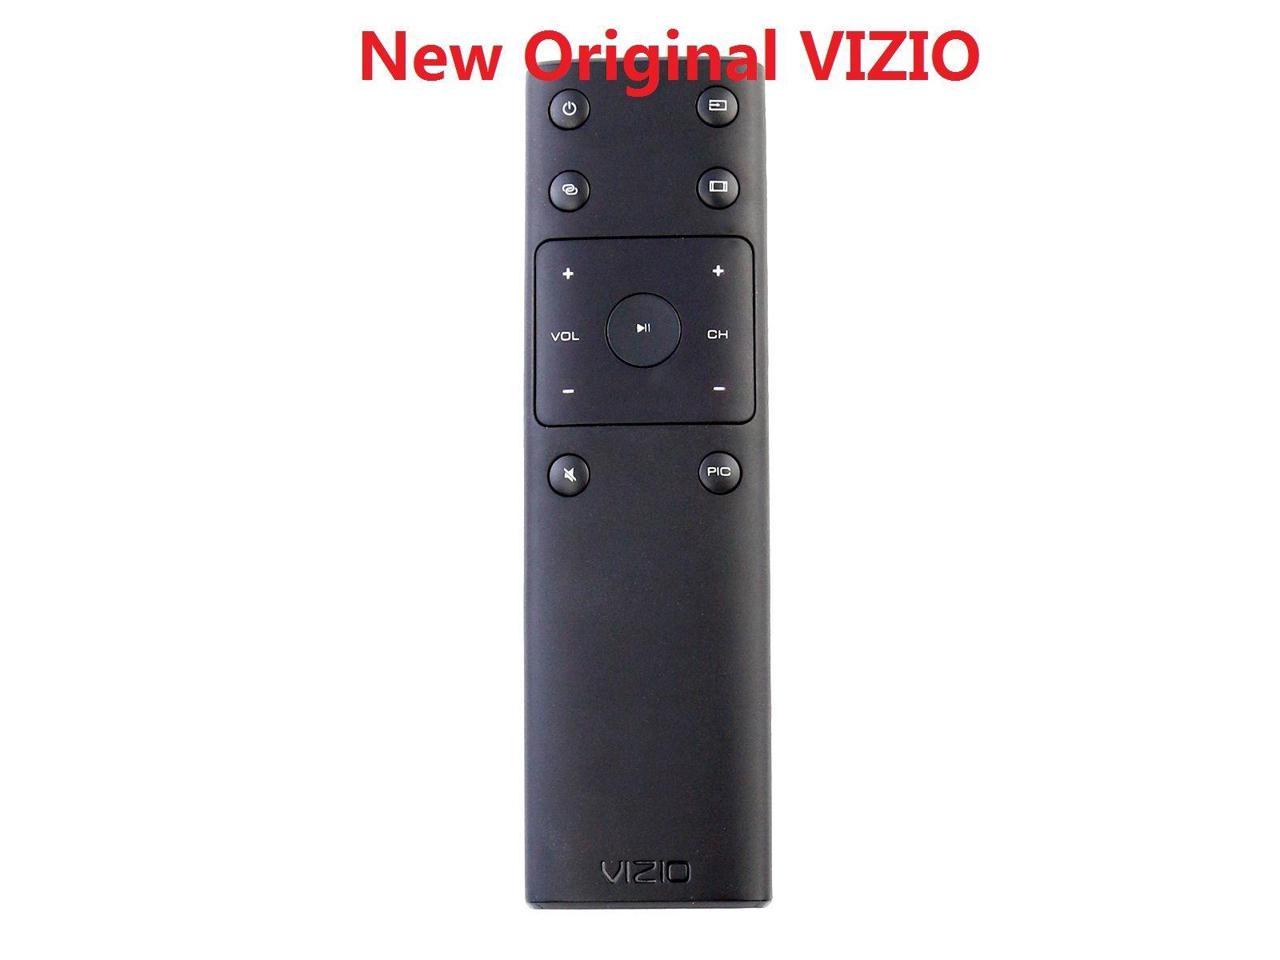 New Xrt132 Tv Remote For Vizio D40u D1 E32 D1 E40 D0 M50 D1 M55 D0 M50